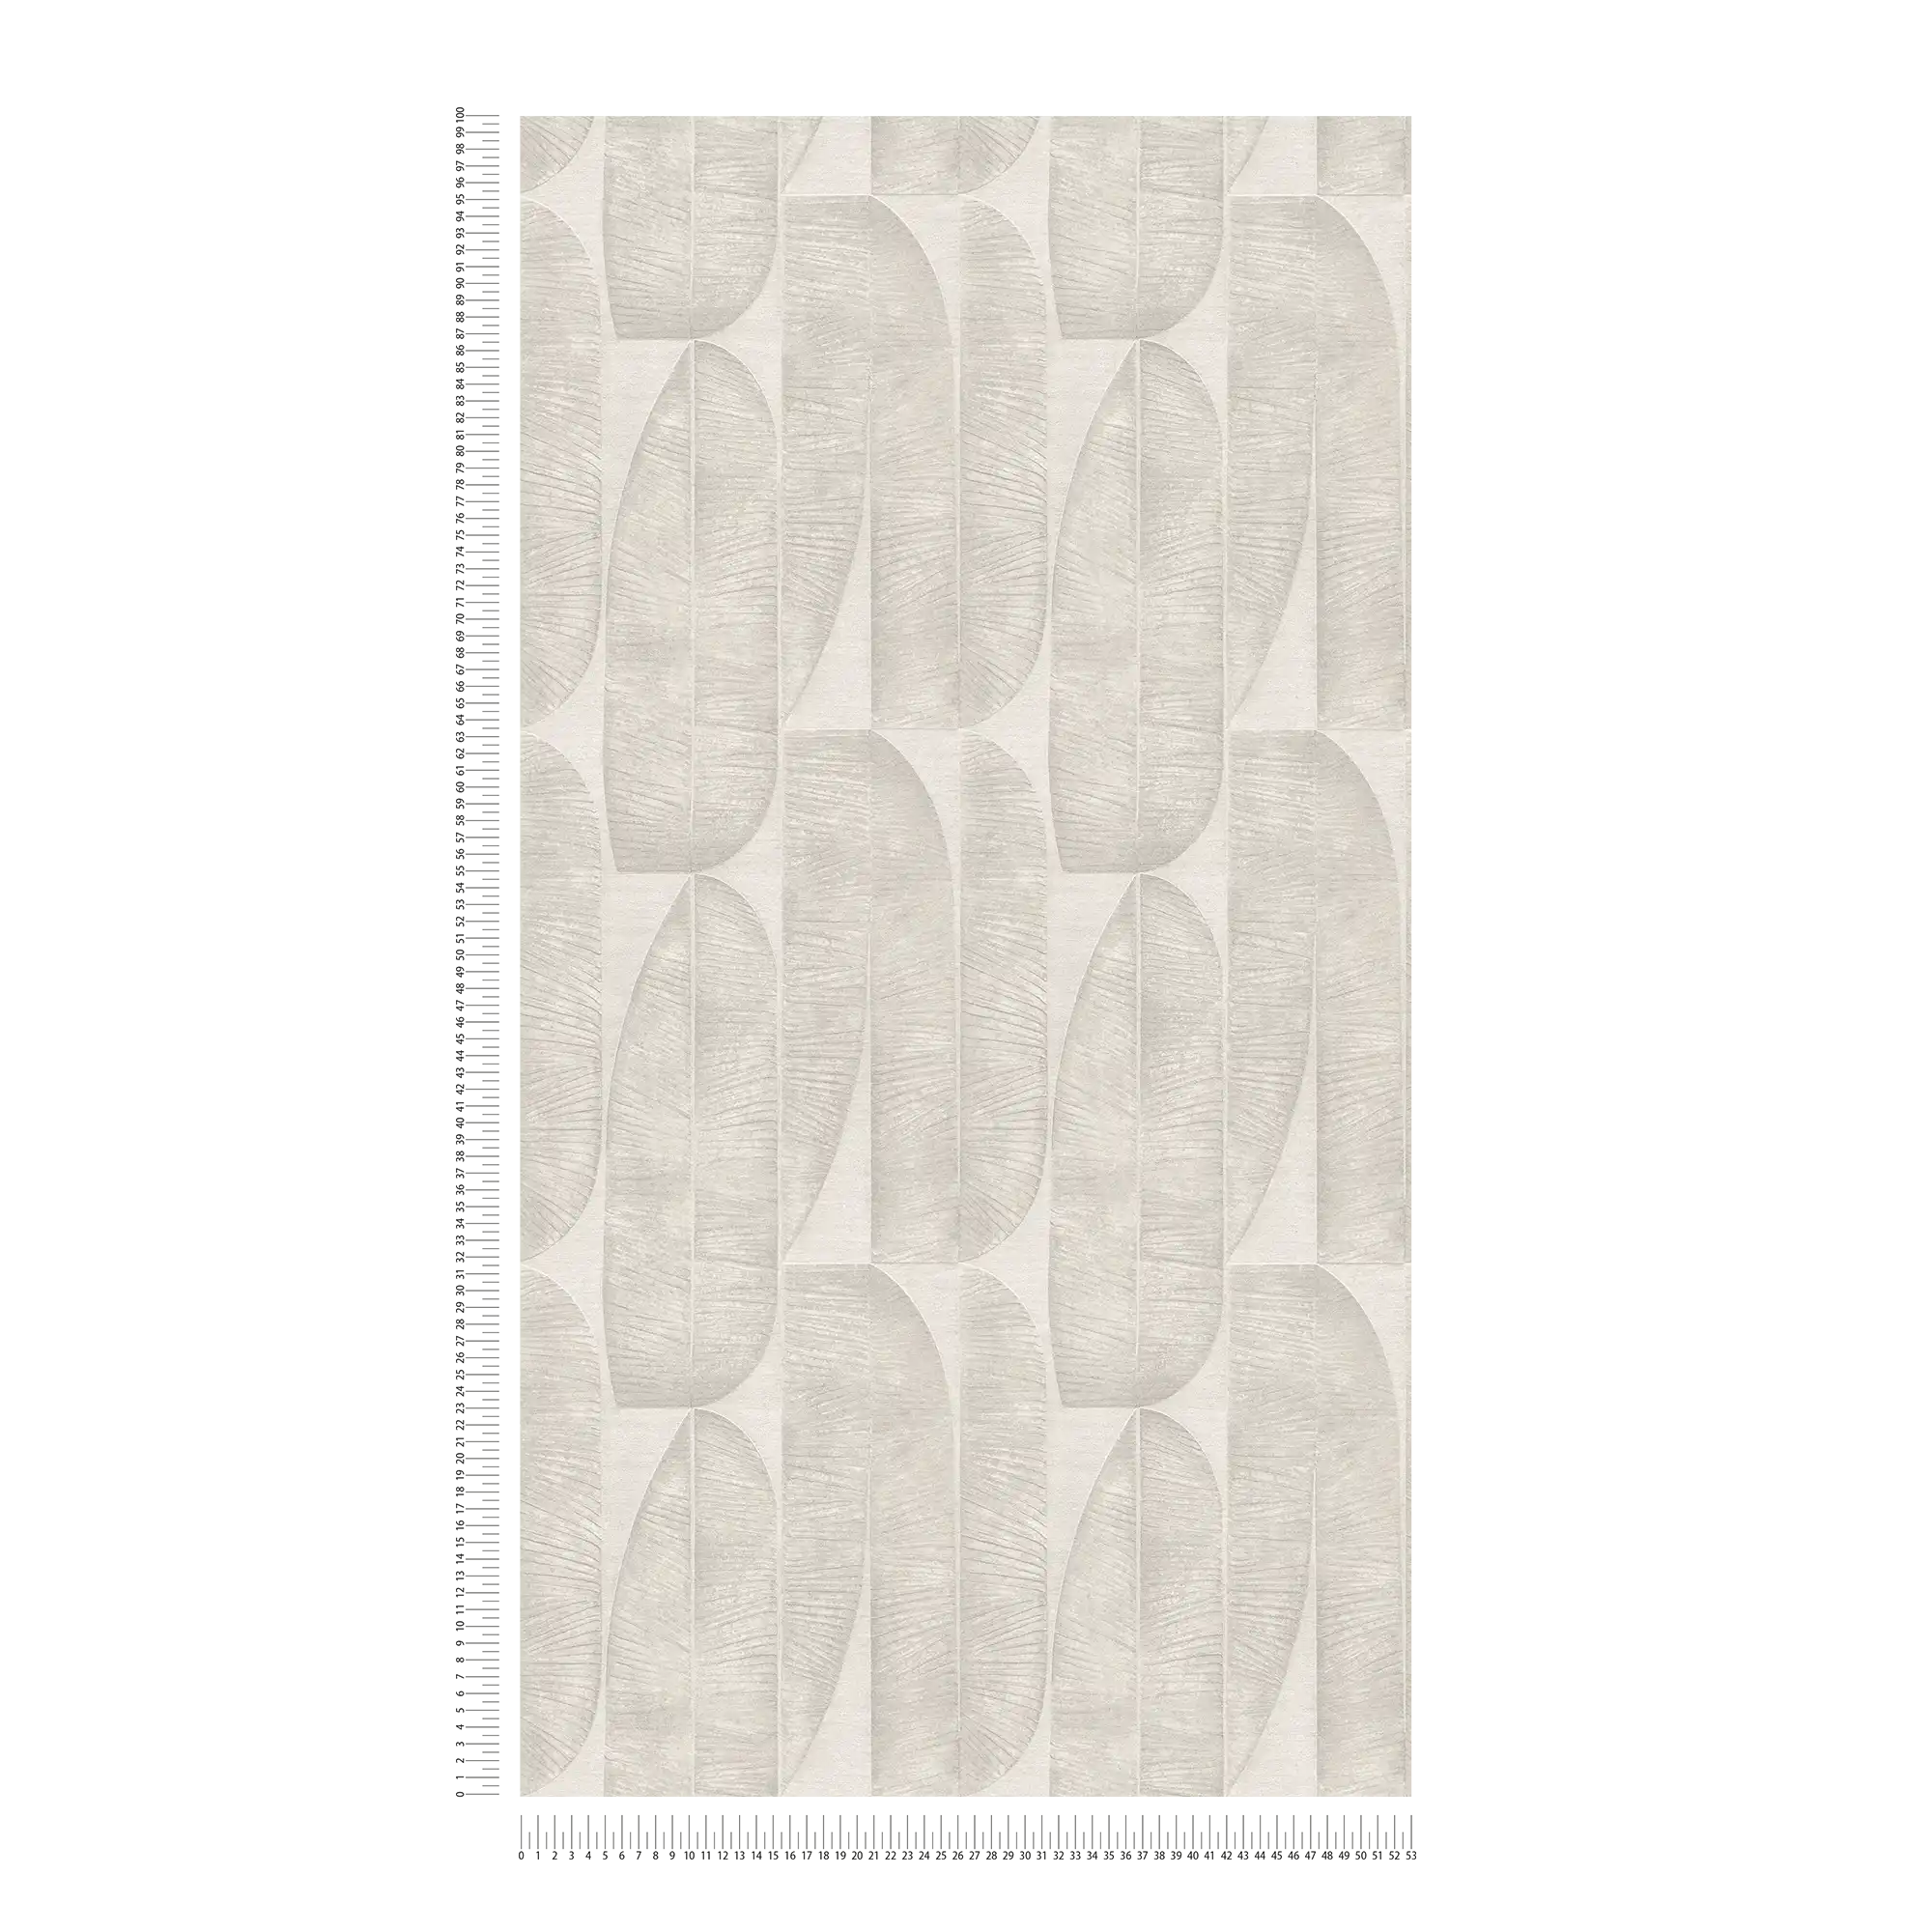             papier peint en papier intissé à motif floral géométrique - gris, beige
        